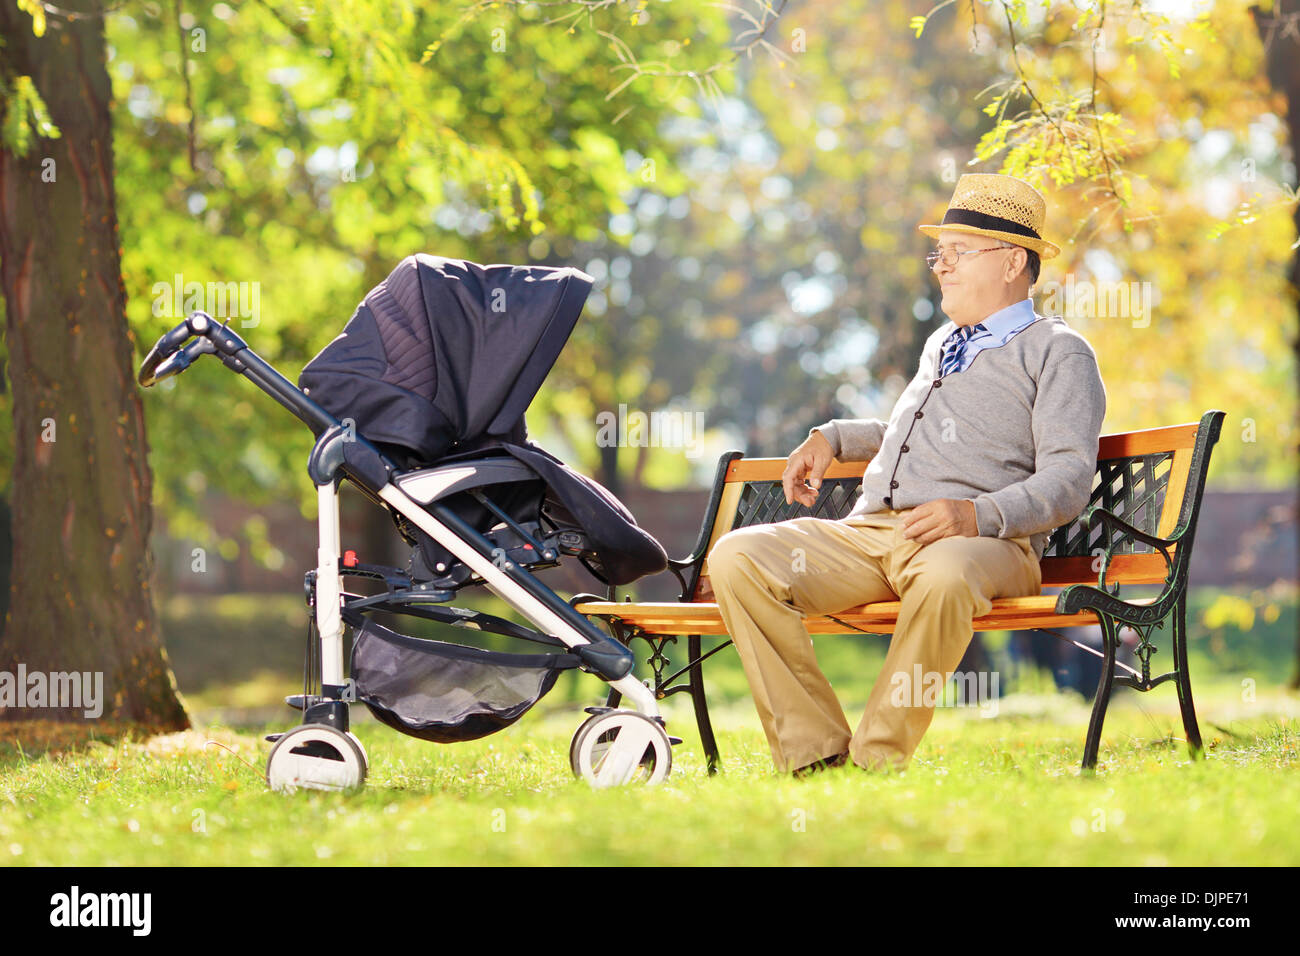 Grand-père assis sur un banc en bois et en regardant son neveu dans une poussette, dans un parc Banque D'Images